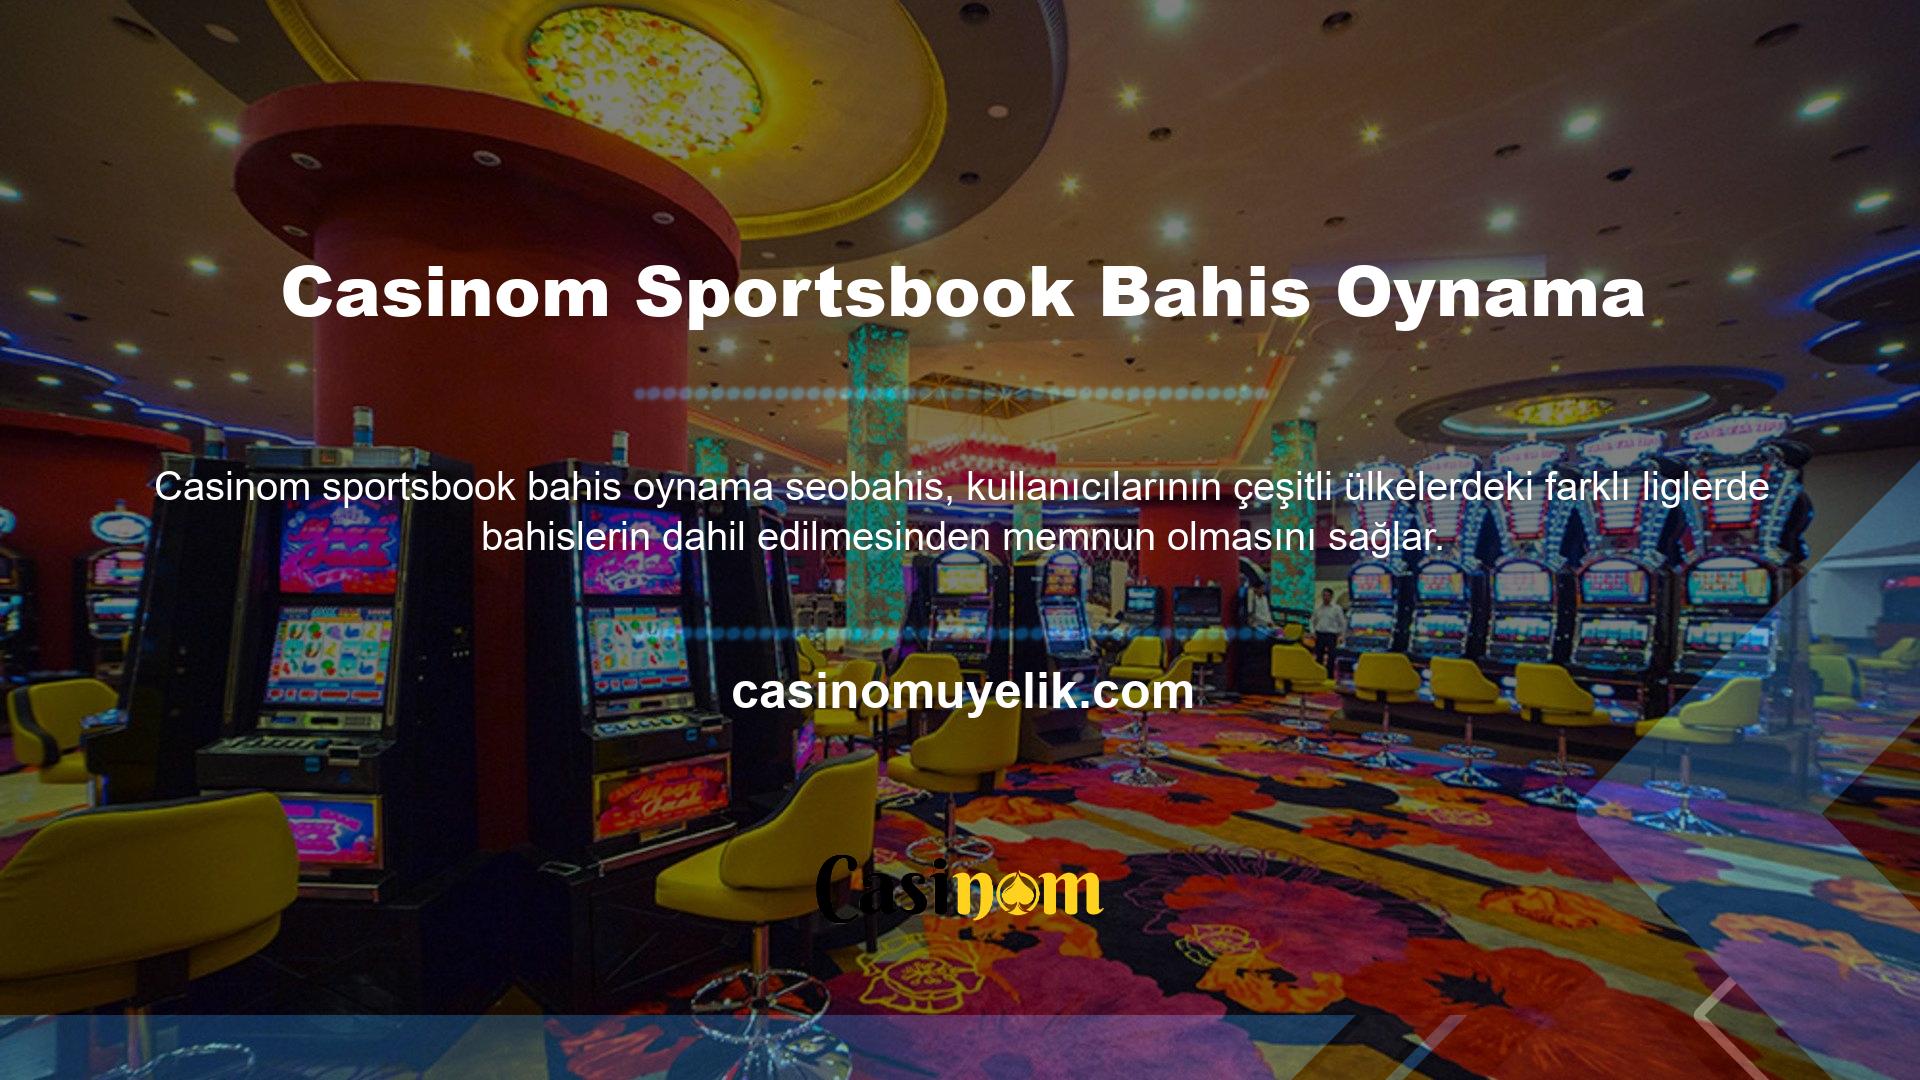 Site, Casinom listelerini zenginleştirerek promosyonlar ve etkinlikler aracılığıyla kullanıcılara içerik sunmaktadır